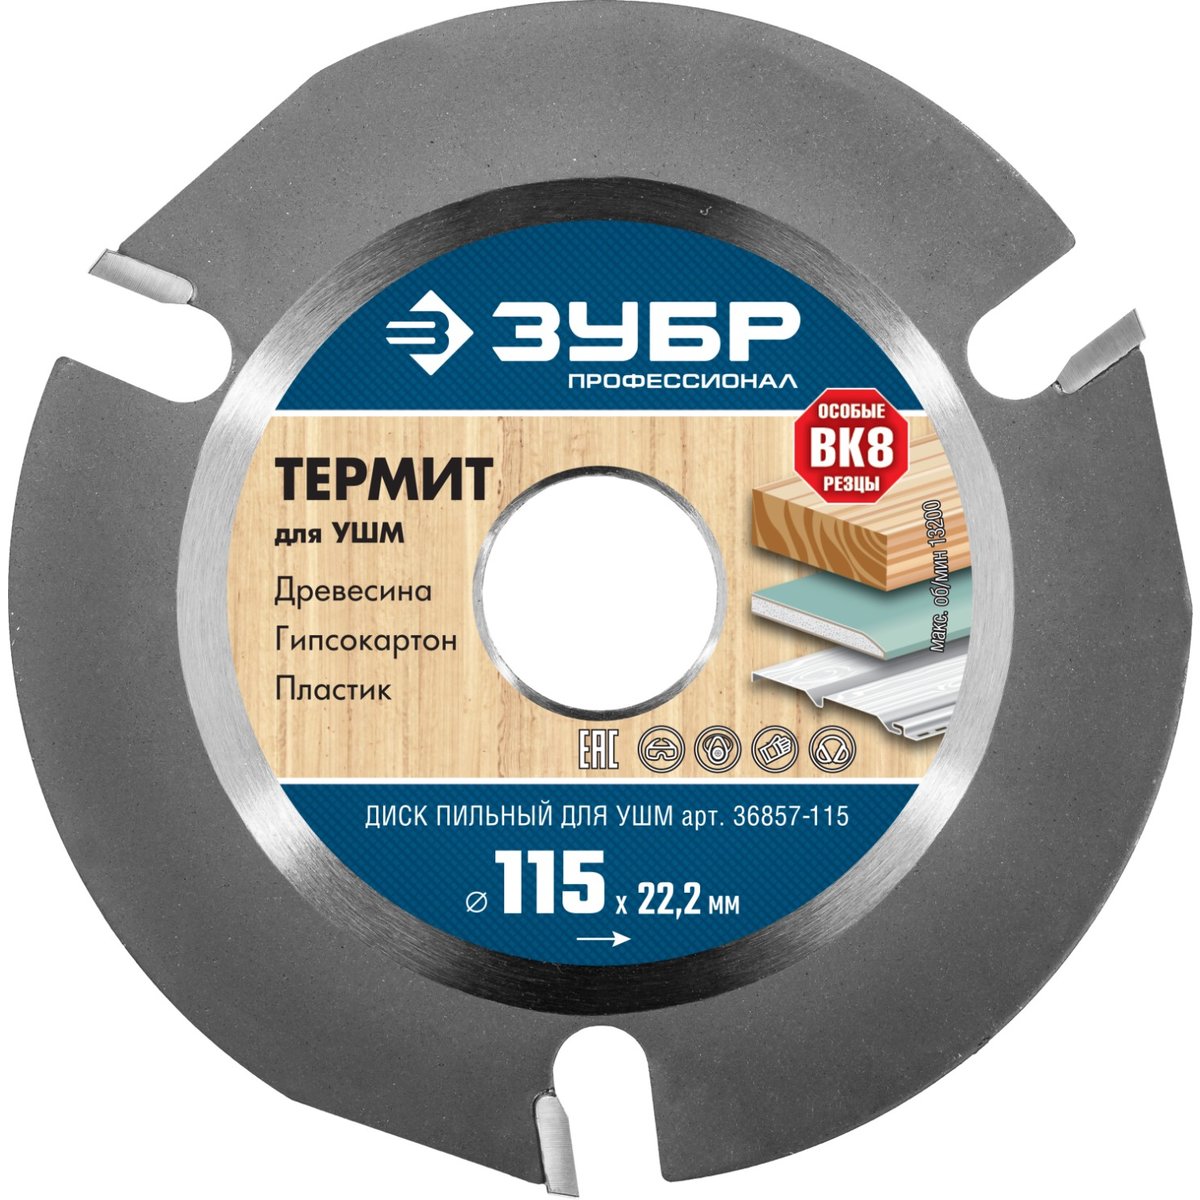 ЗУБР 115х22,2мм, 3Т, диск пильный для УШМ 36857-115